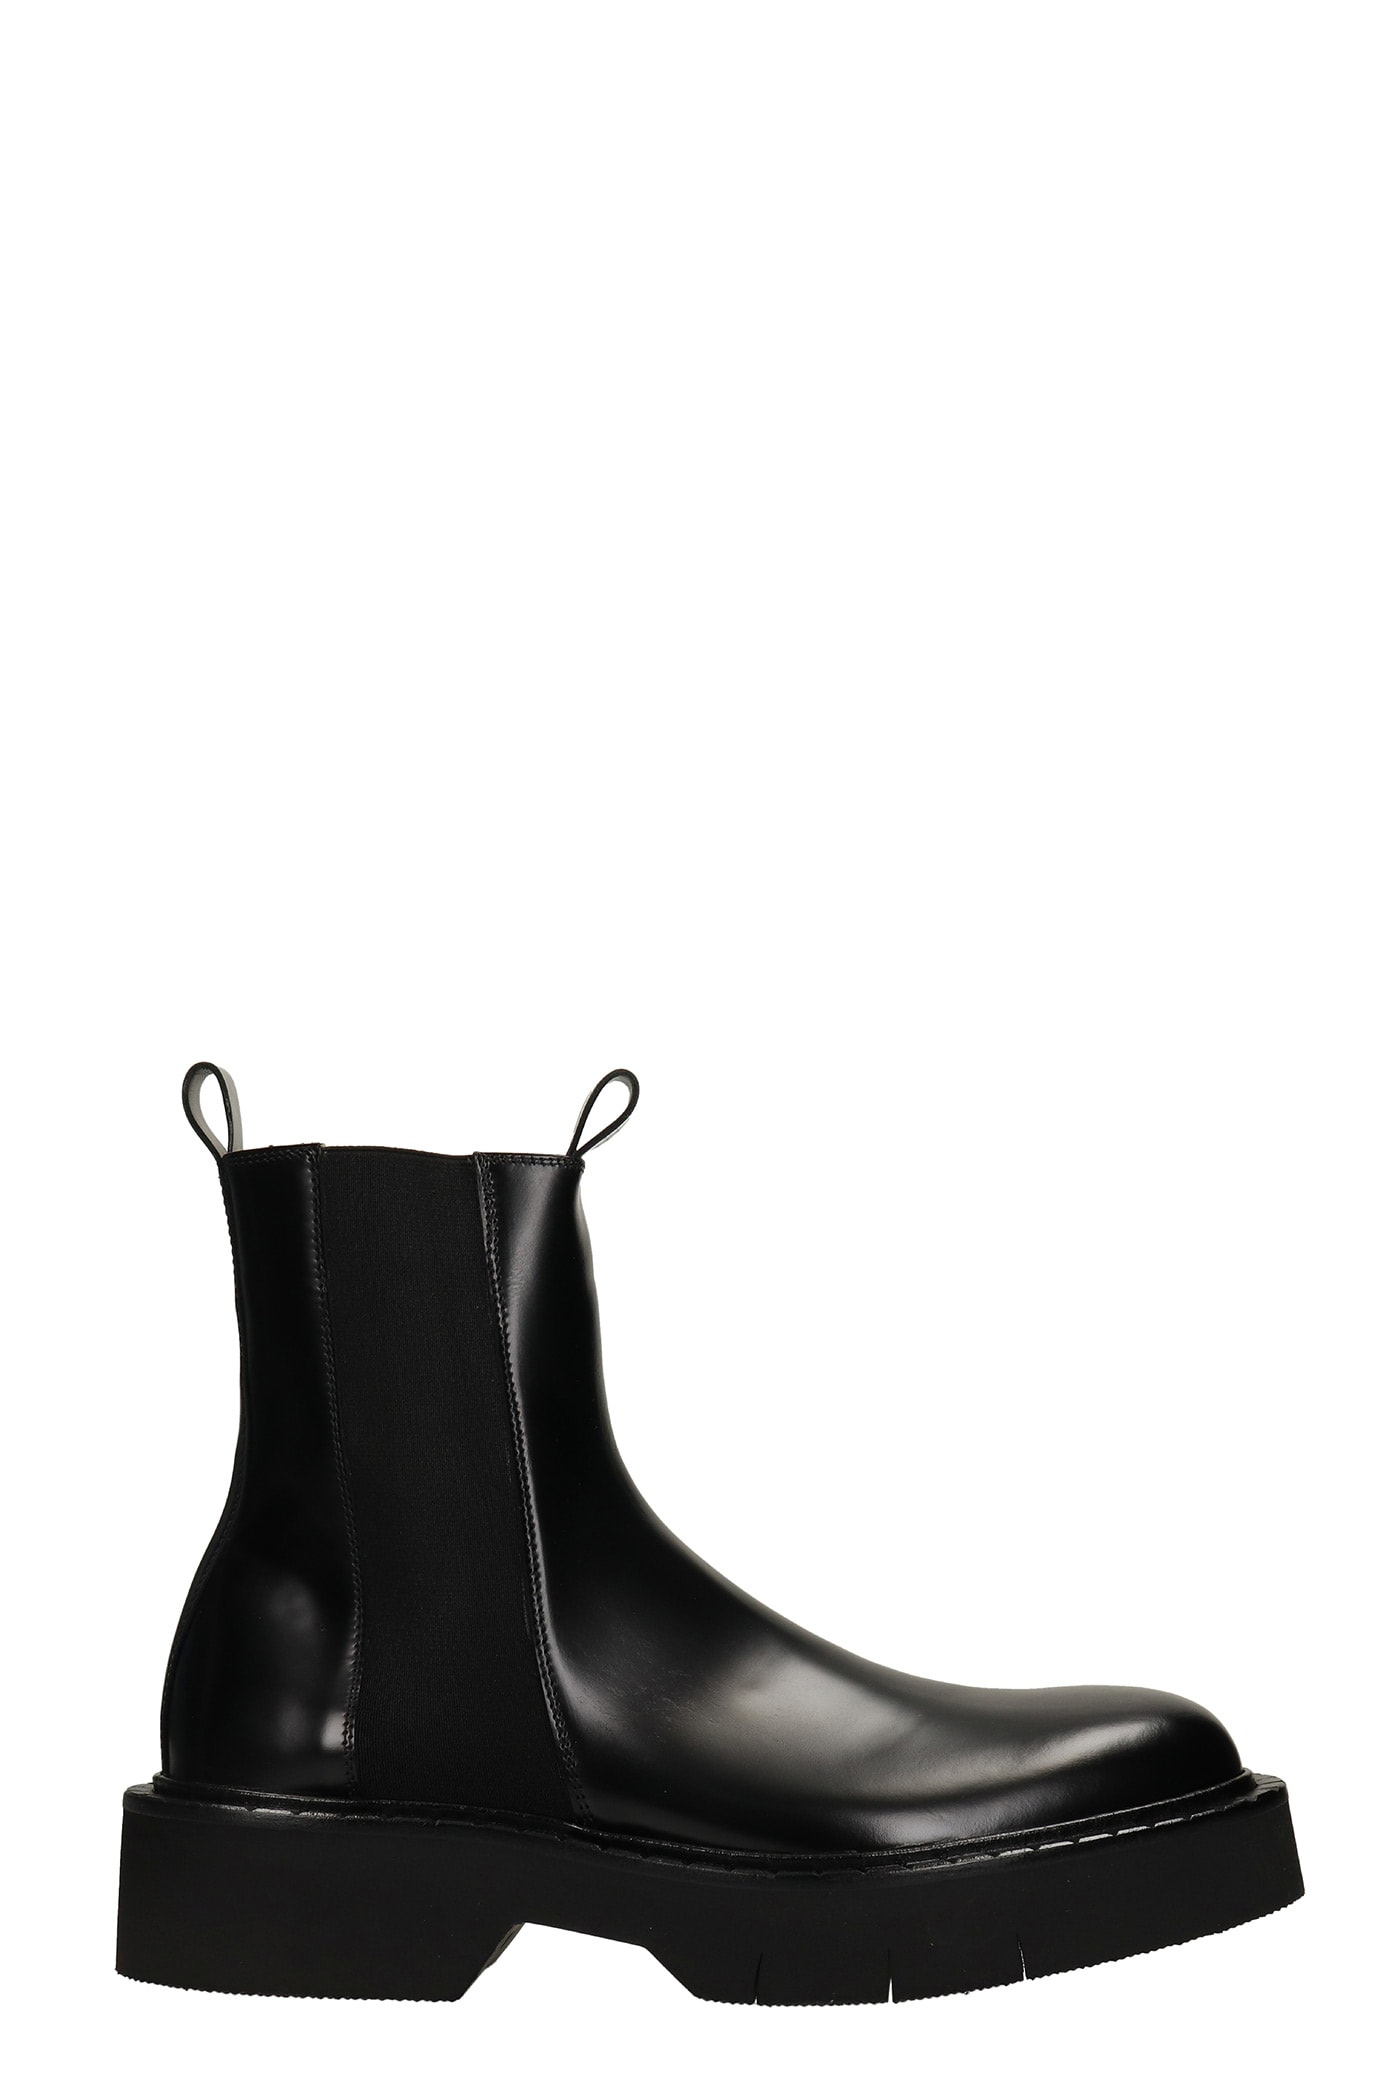 Cesare Paciotti Tronchetti Ankle Boots In Black Leather